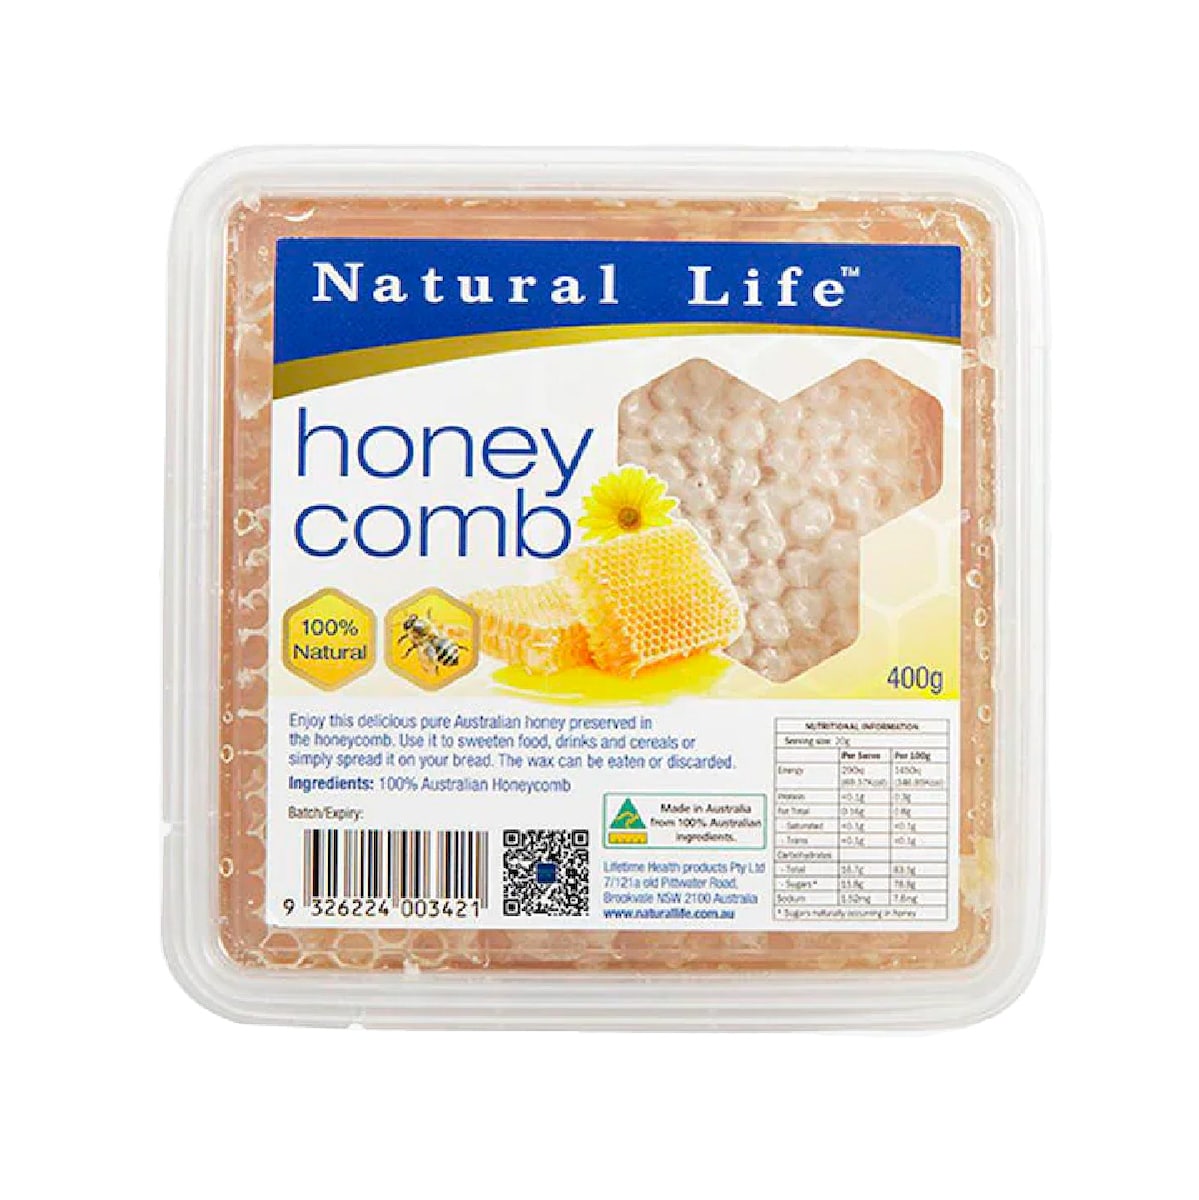 Natural Life Honey Comb Organic 400G